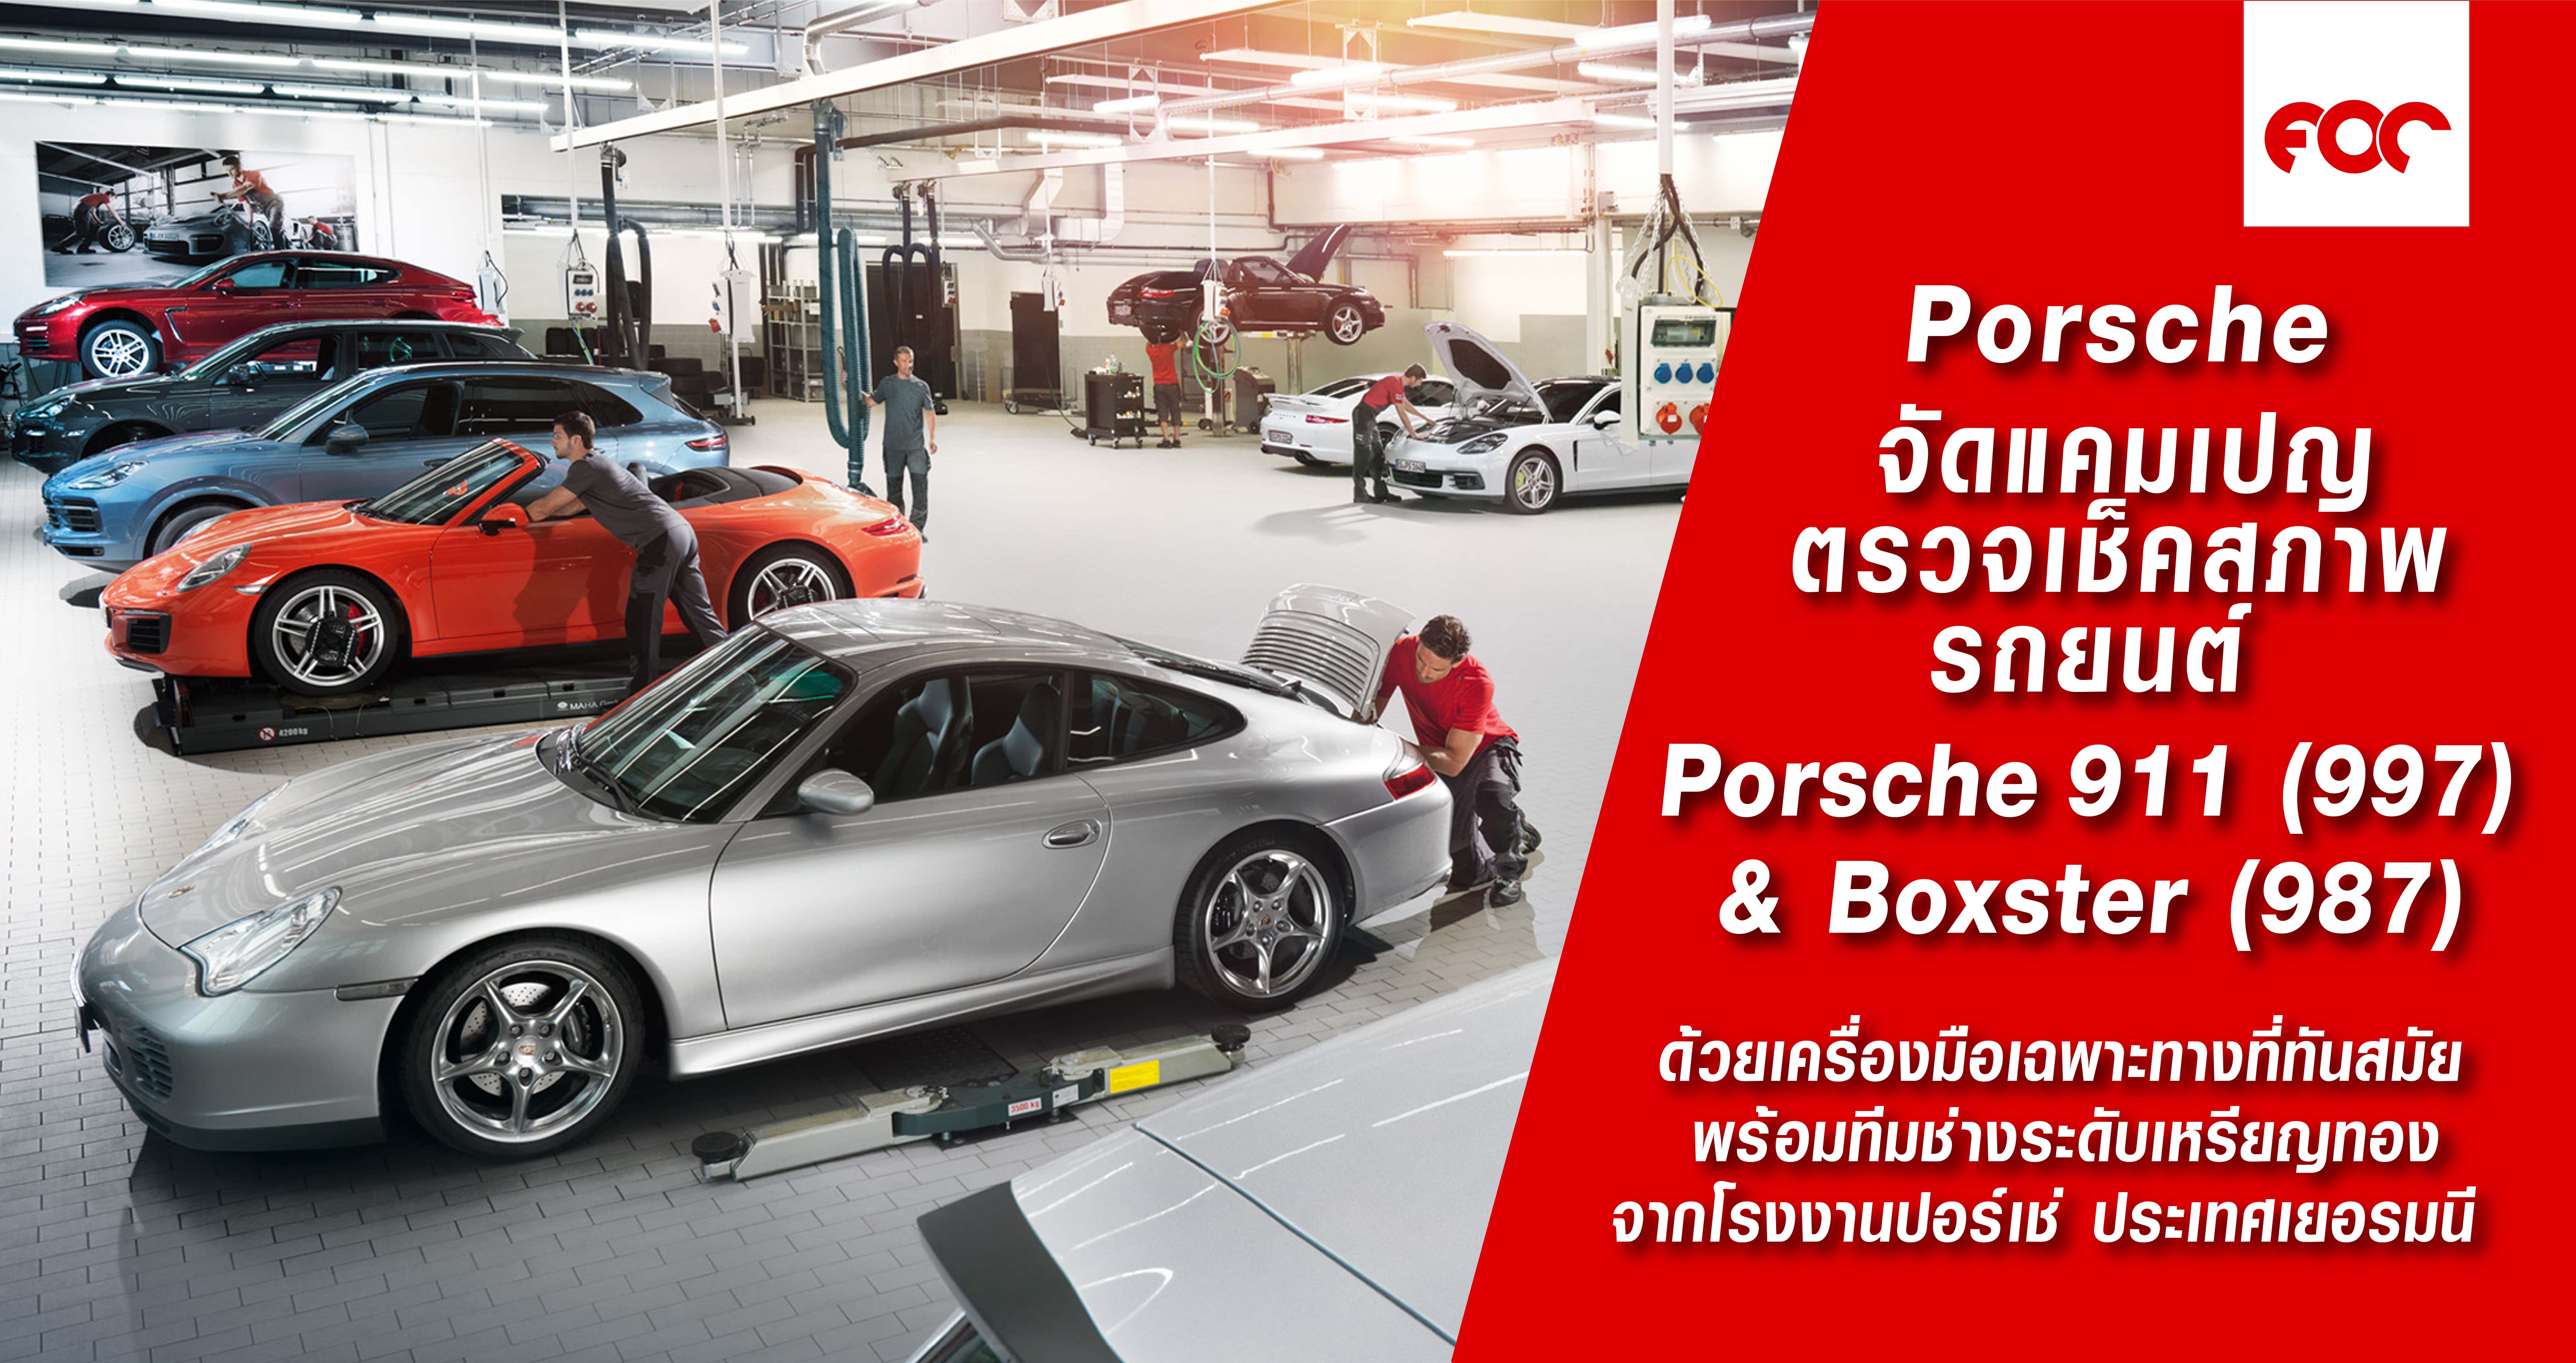 ปอร์เช่ ประเทศไทย จัดแคมเปญตรวจเช็คสภาพรถยนต์ ปอร์เช่ 911 (997) และ บ็อกซเตอร์ (987)                   